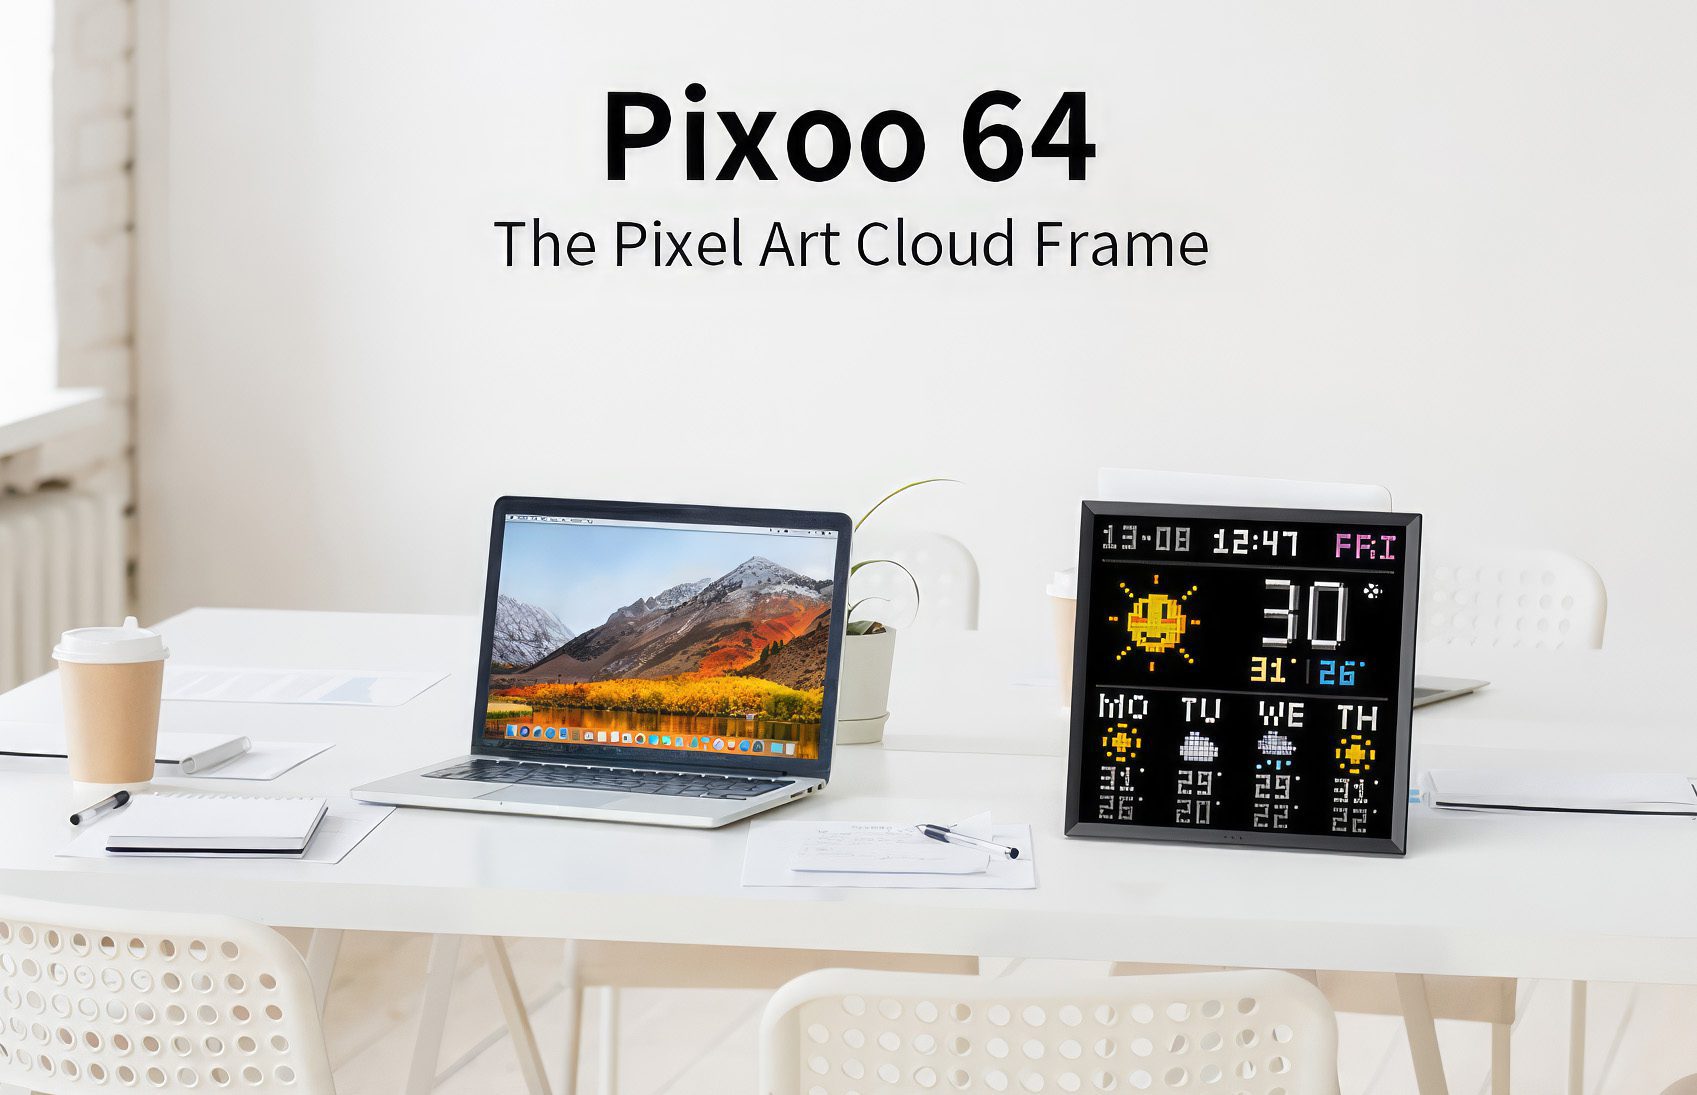 Die Pixoo 64 LED-Matrix bietet mit 4096 Bildpunkten eine recht hohe Auflösung und kann auch Informationen oder Pixelart darstellen (Foto: Divoom).